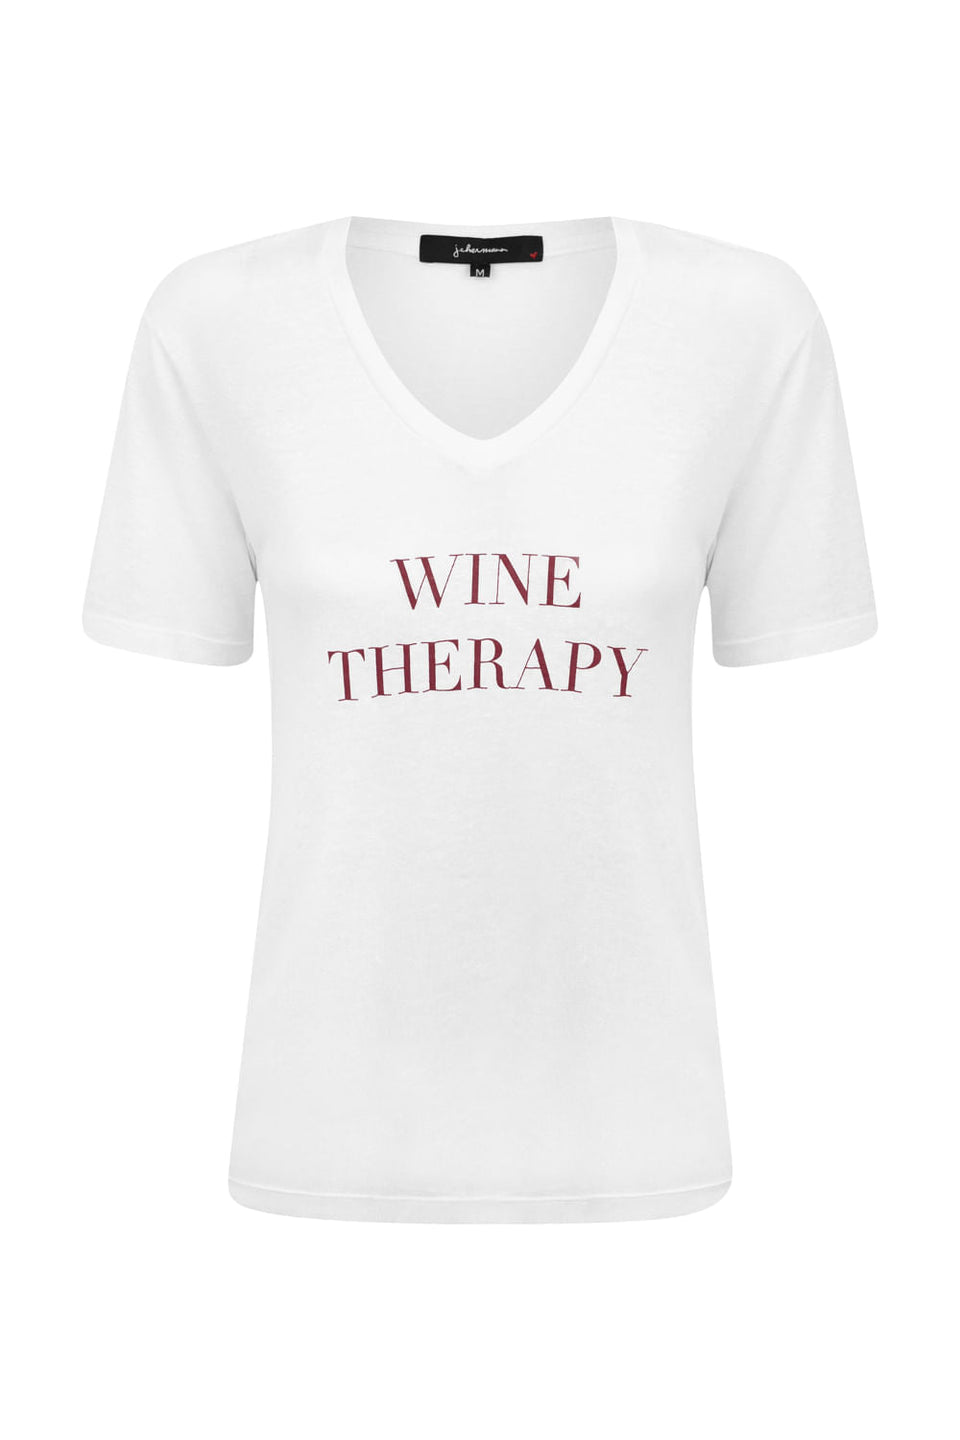 Camiseta Wine Therapy Branco